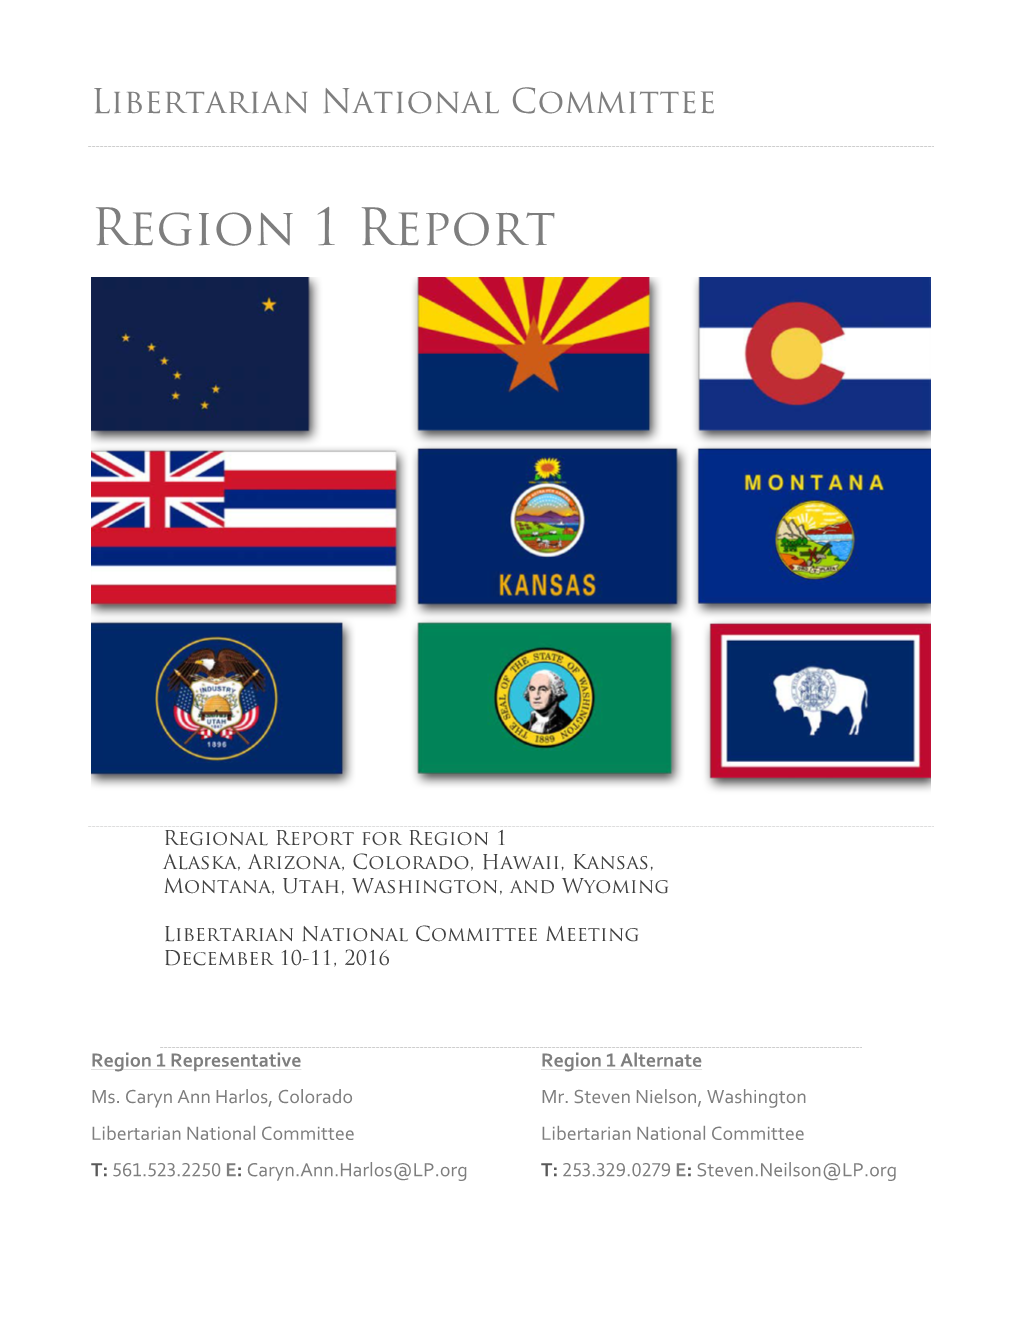 Region 1 Report